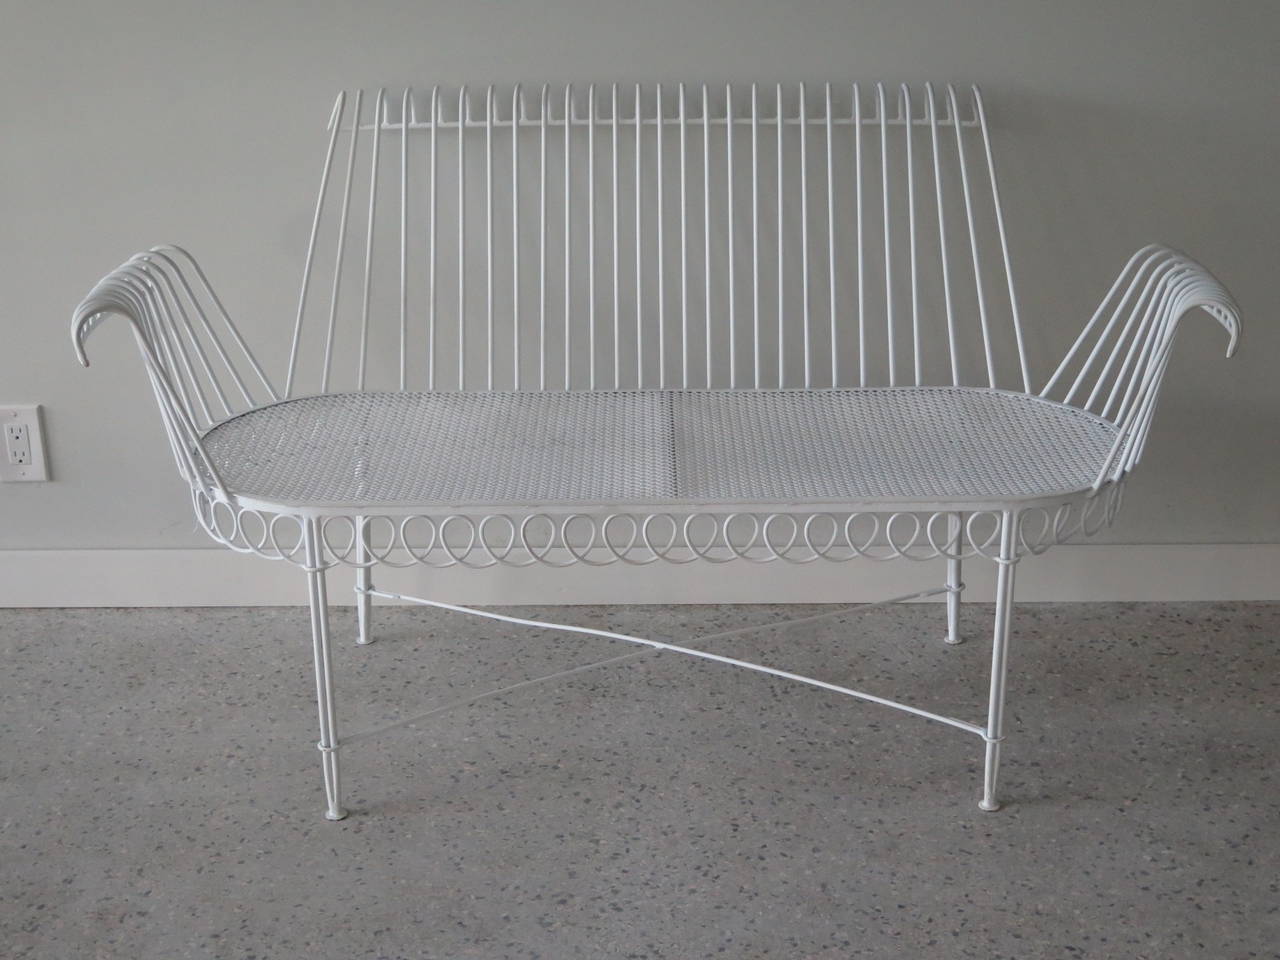 An elegant wrought iron settee by Mathieu Mategot.